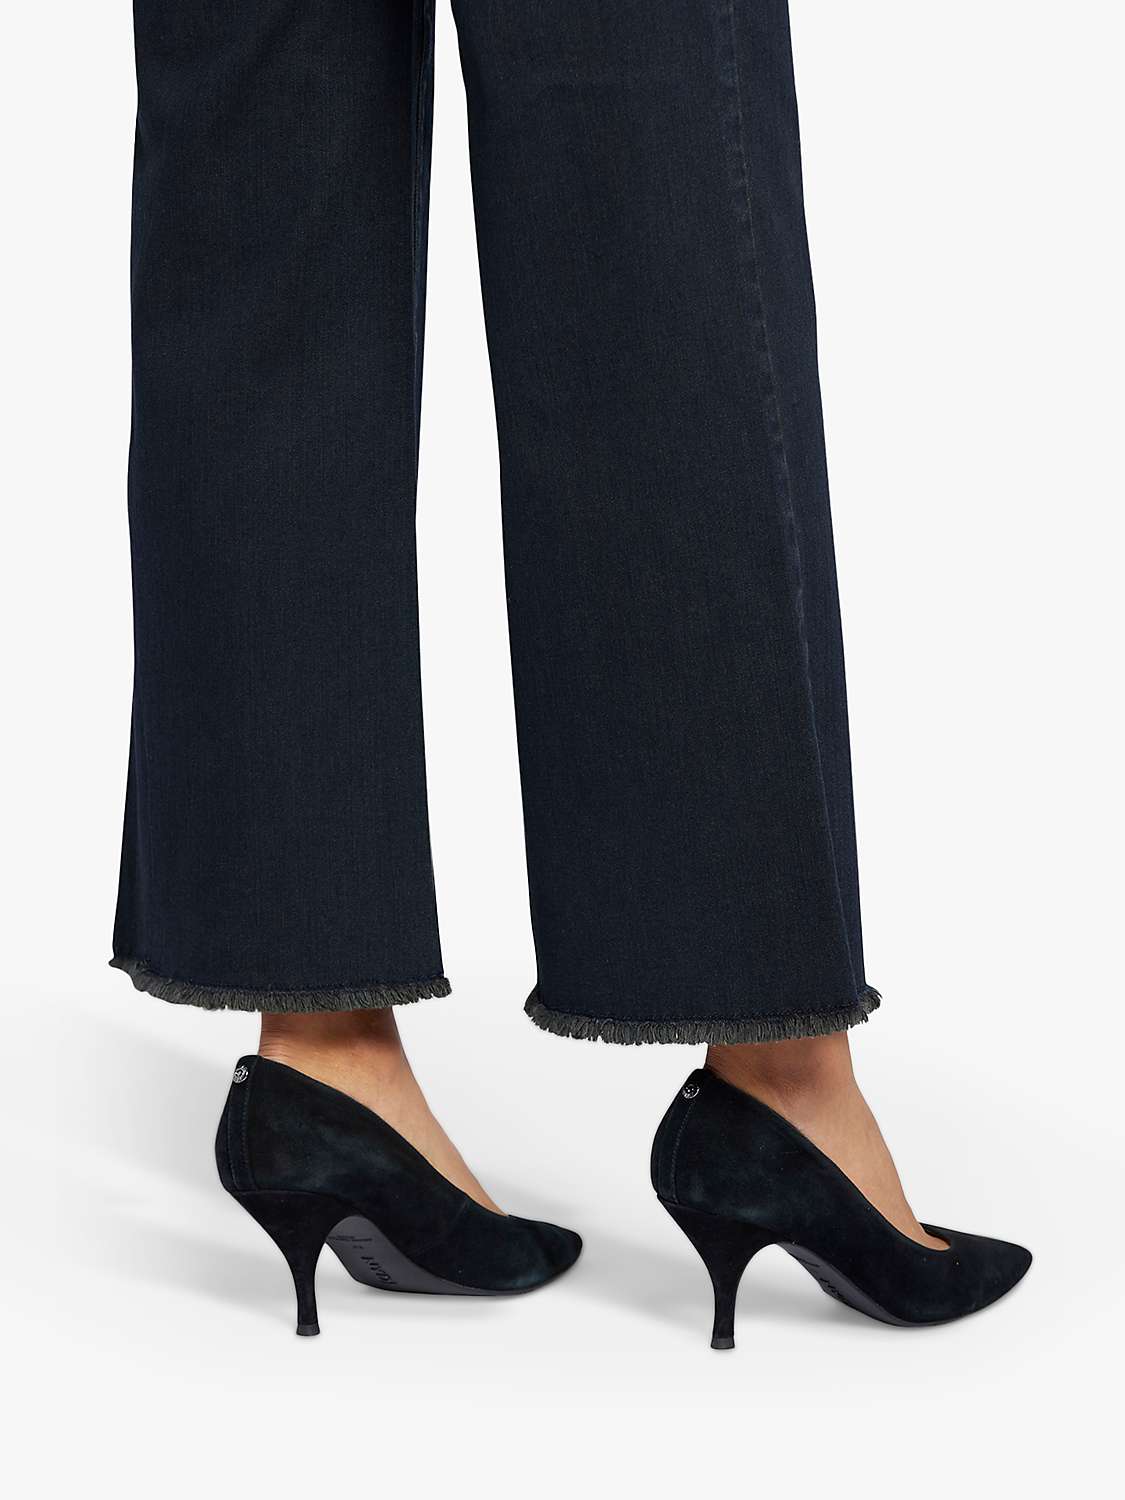 Buy NYDJ Teresa Wide Leg Ankle Frayed Hem Jeans Online at johnlewis.com